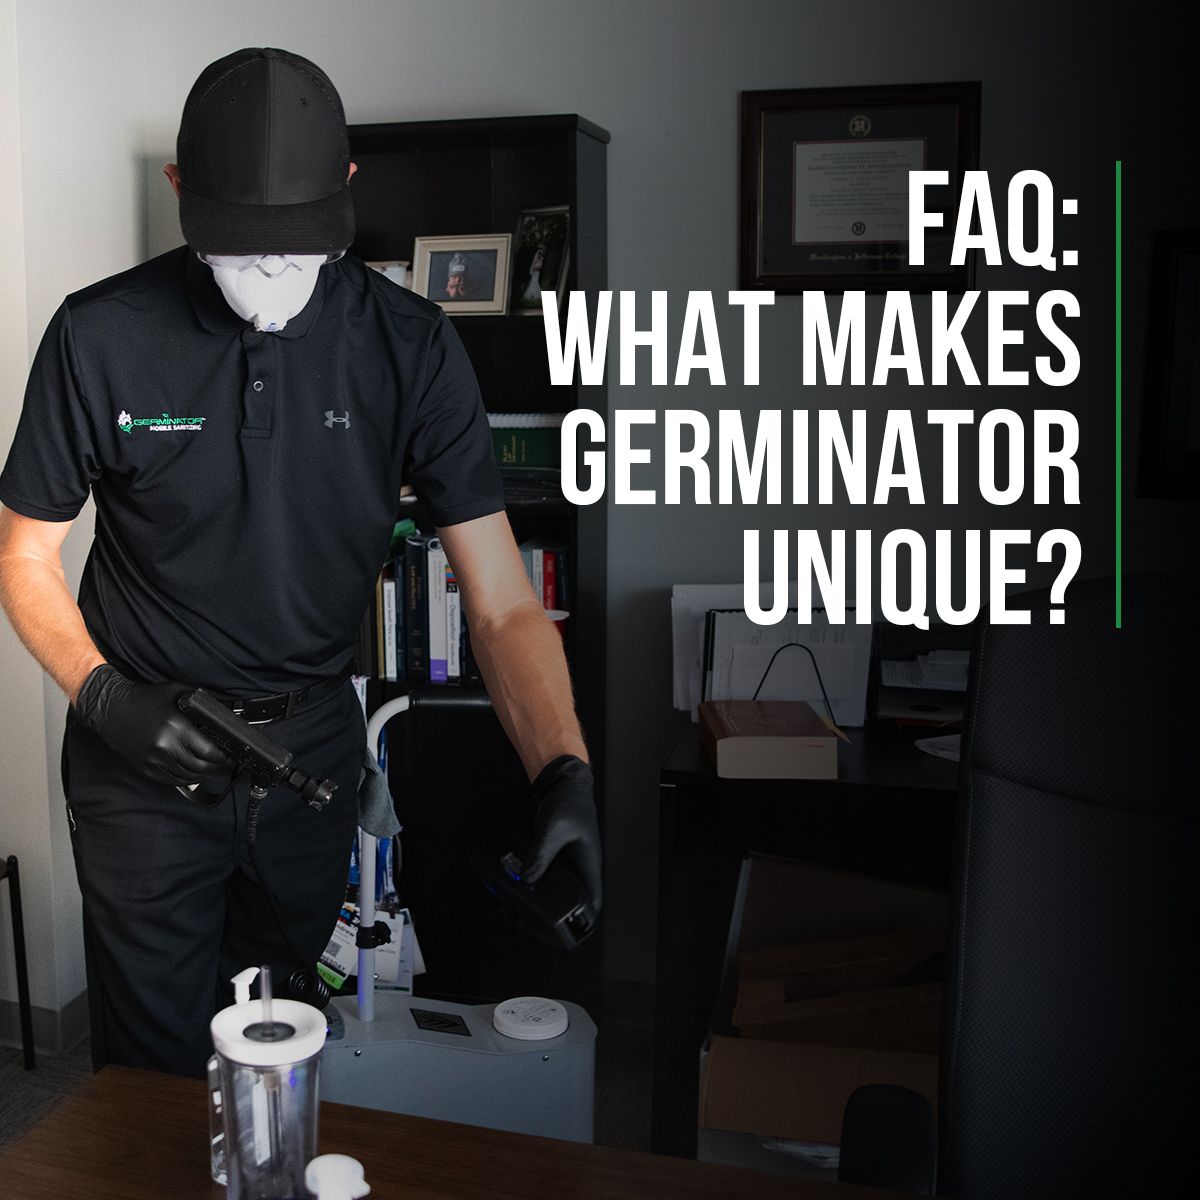 FAQ: What Makes Germinator Unique?